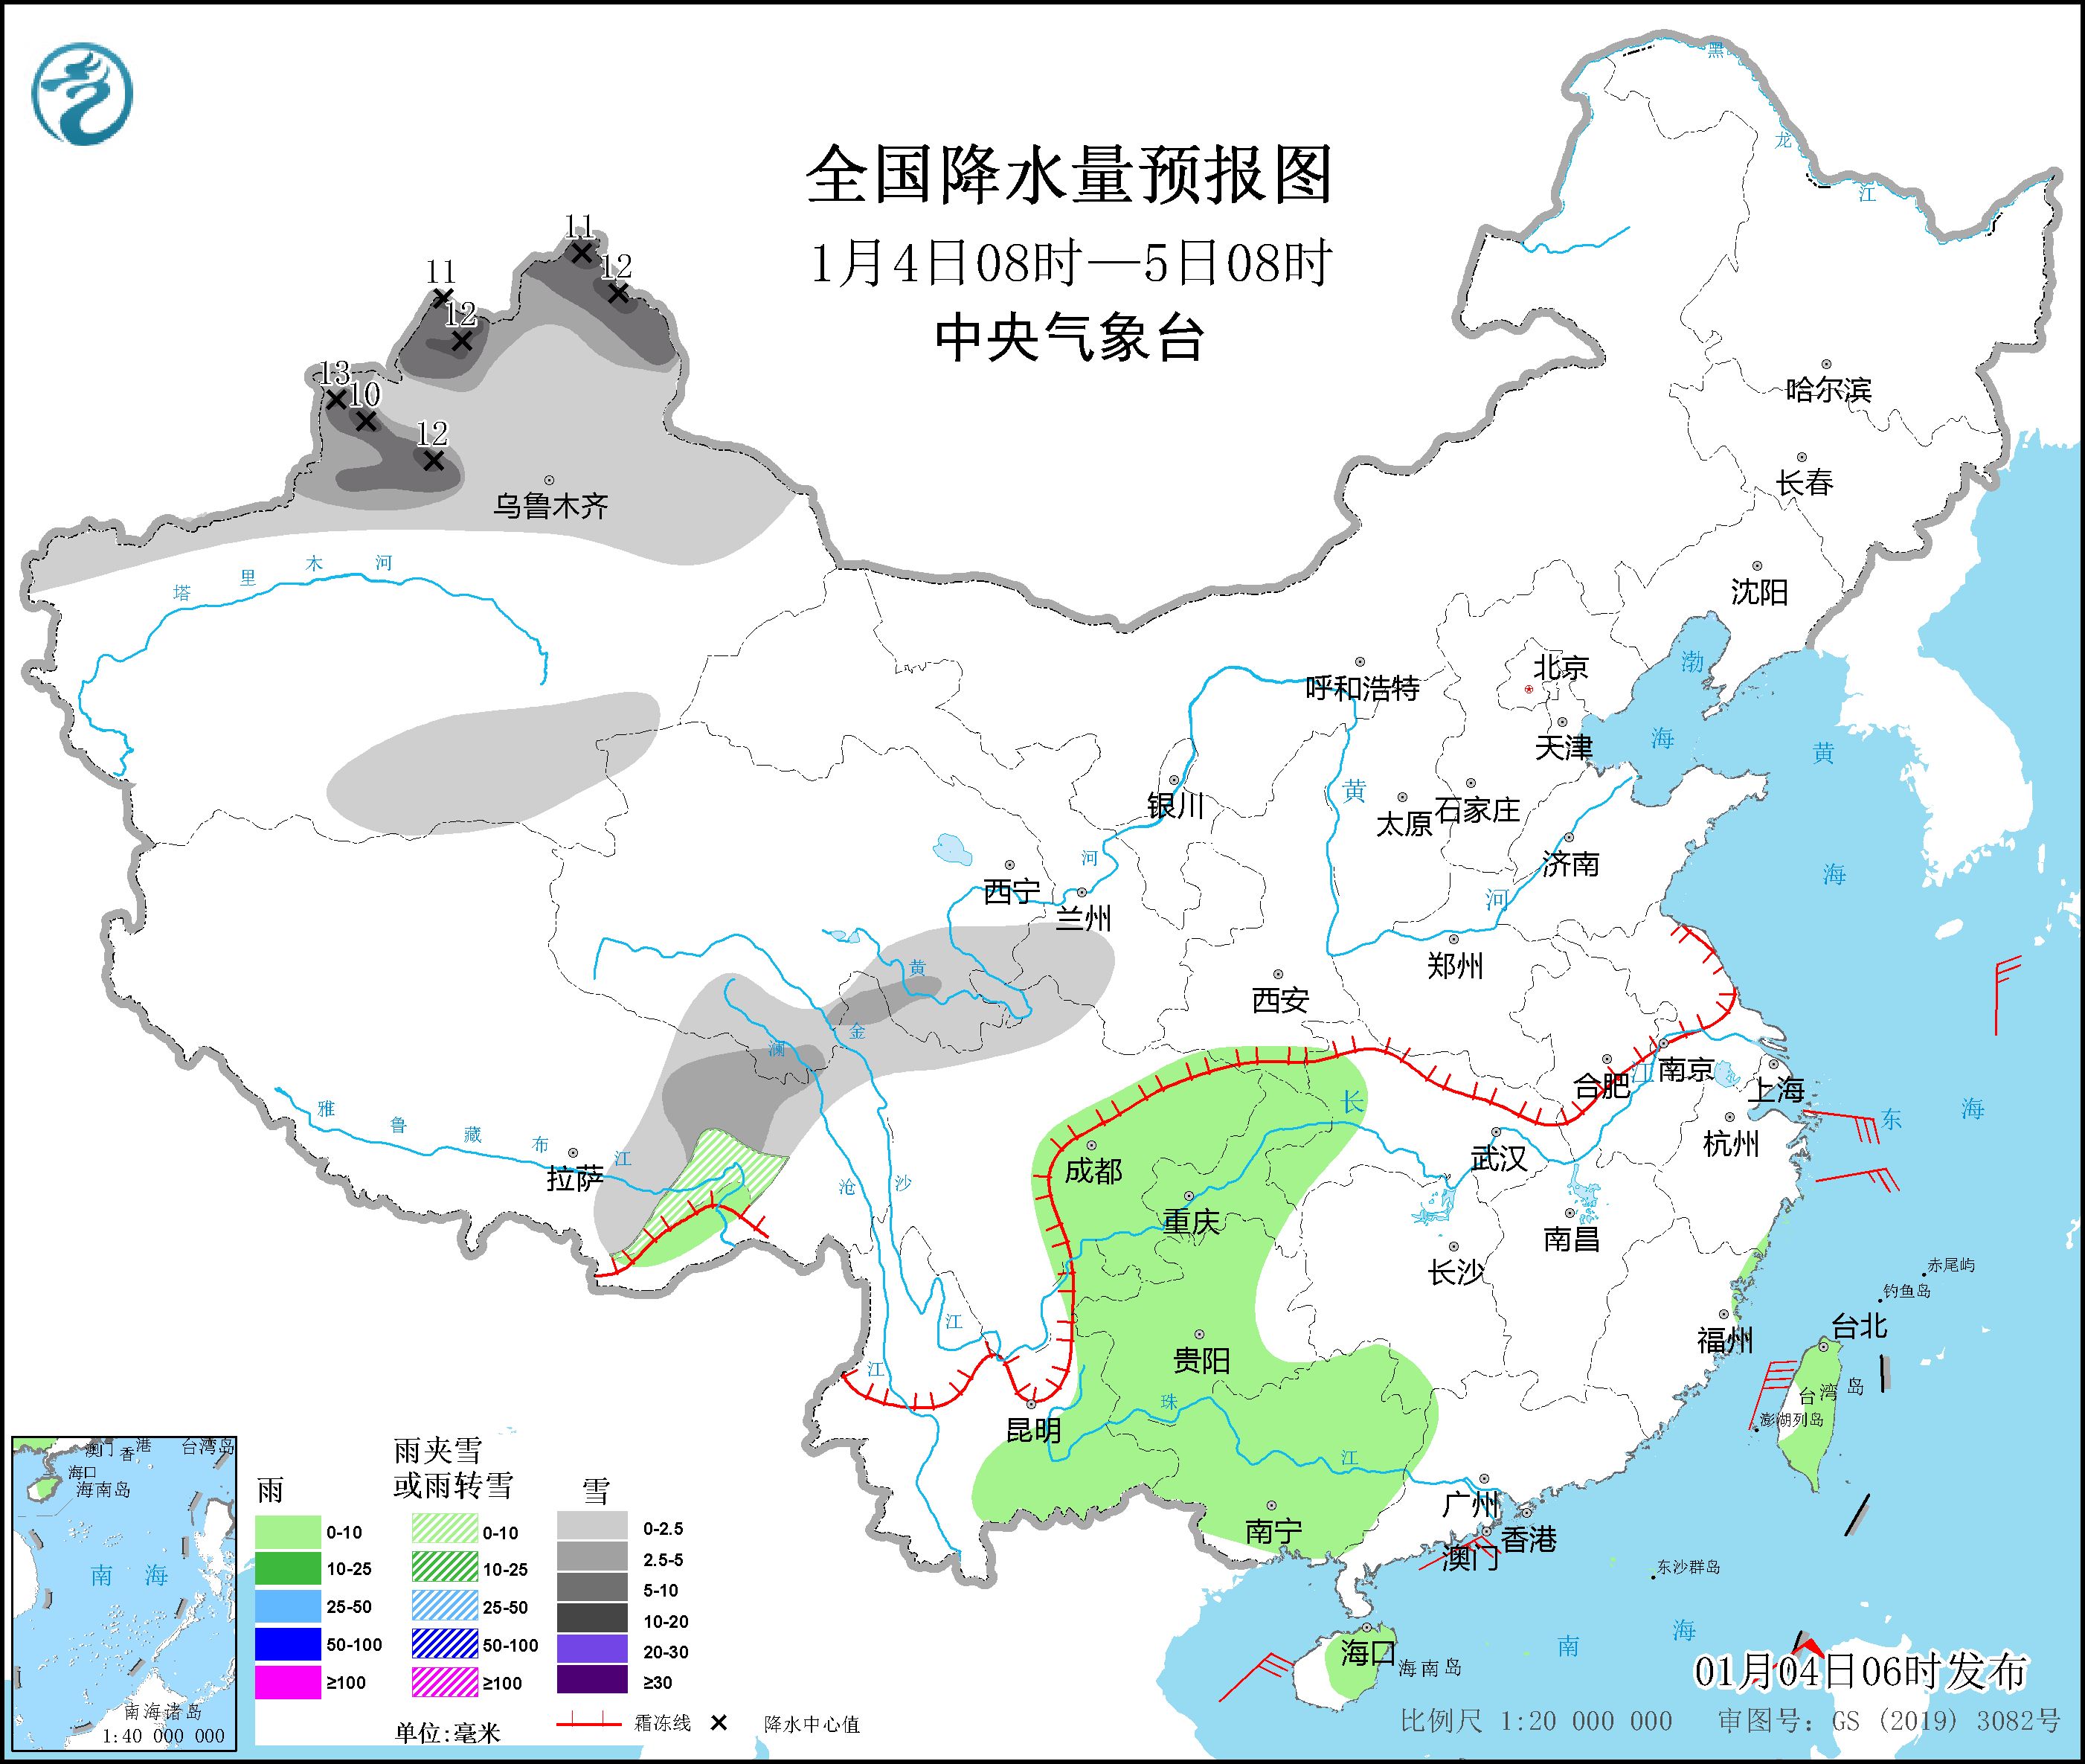 华北中南部黄淮江淮江汉等地有雾霾 新疆北部将有较强降雪